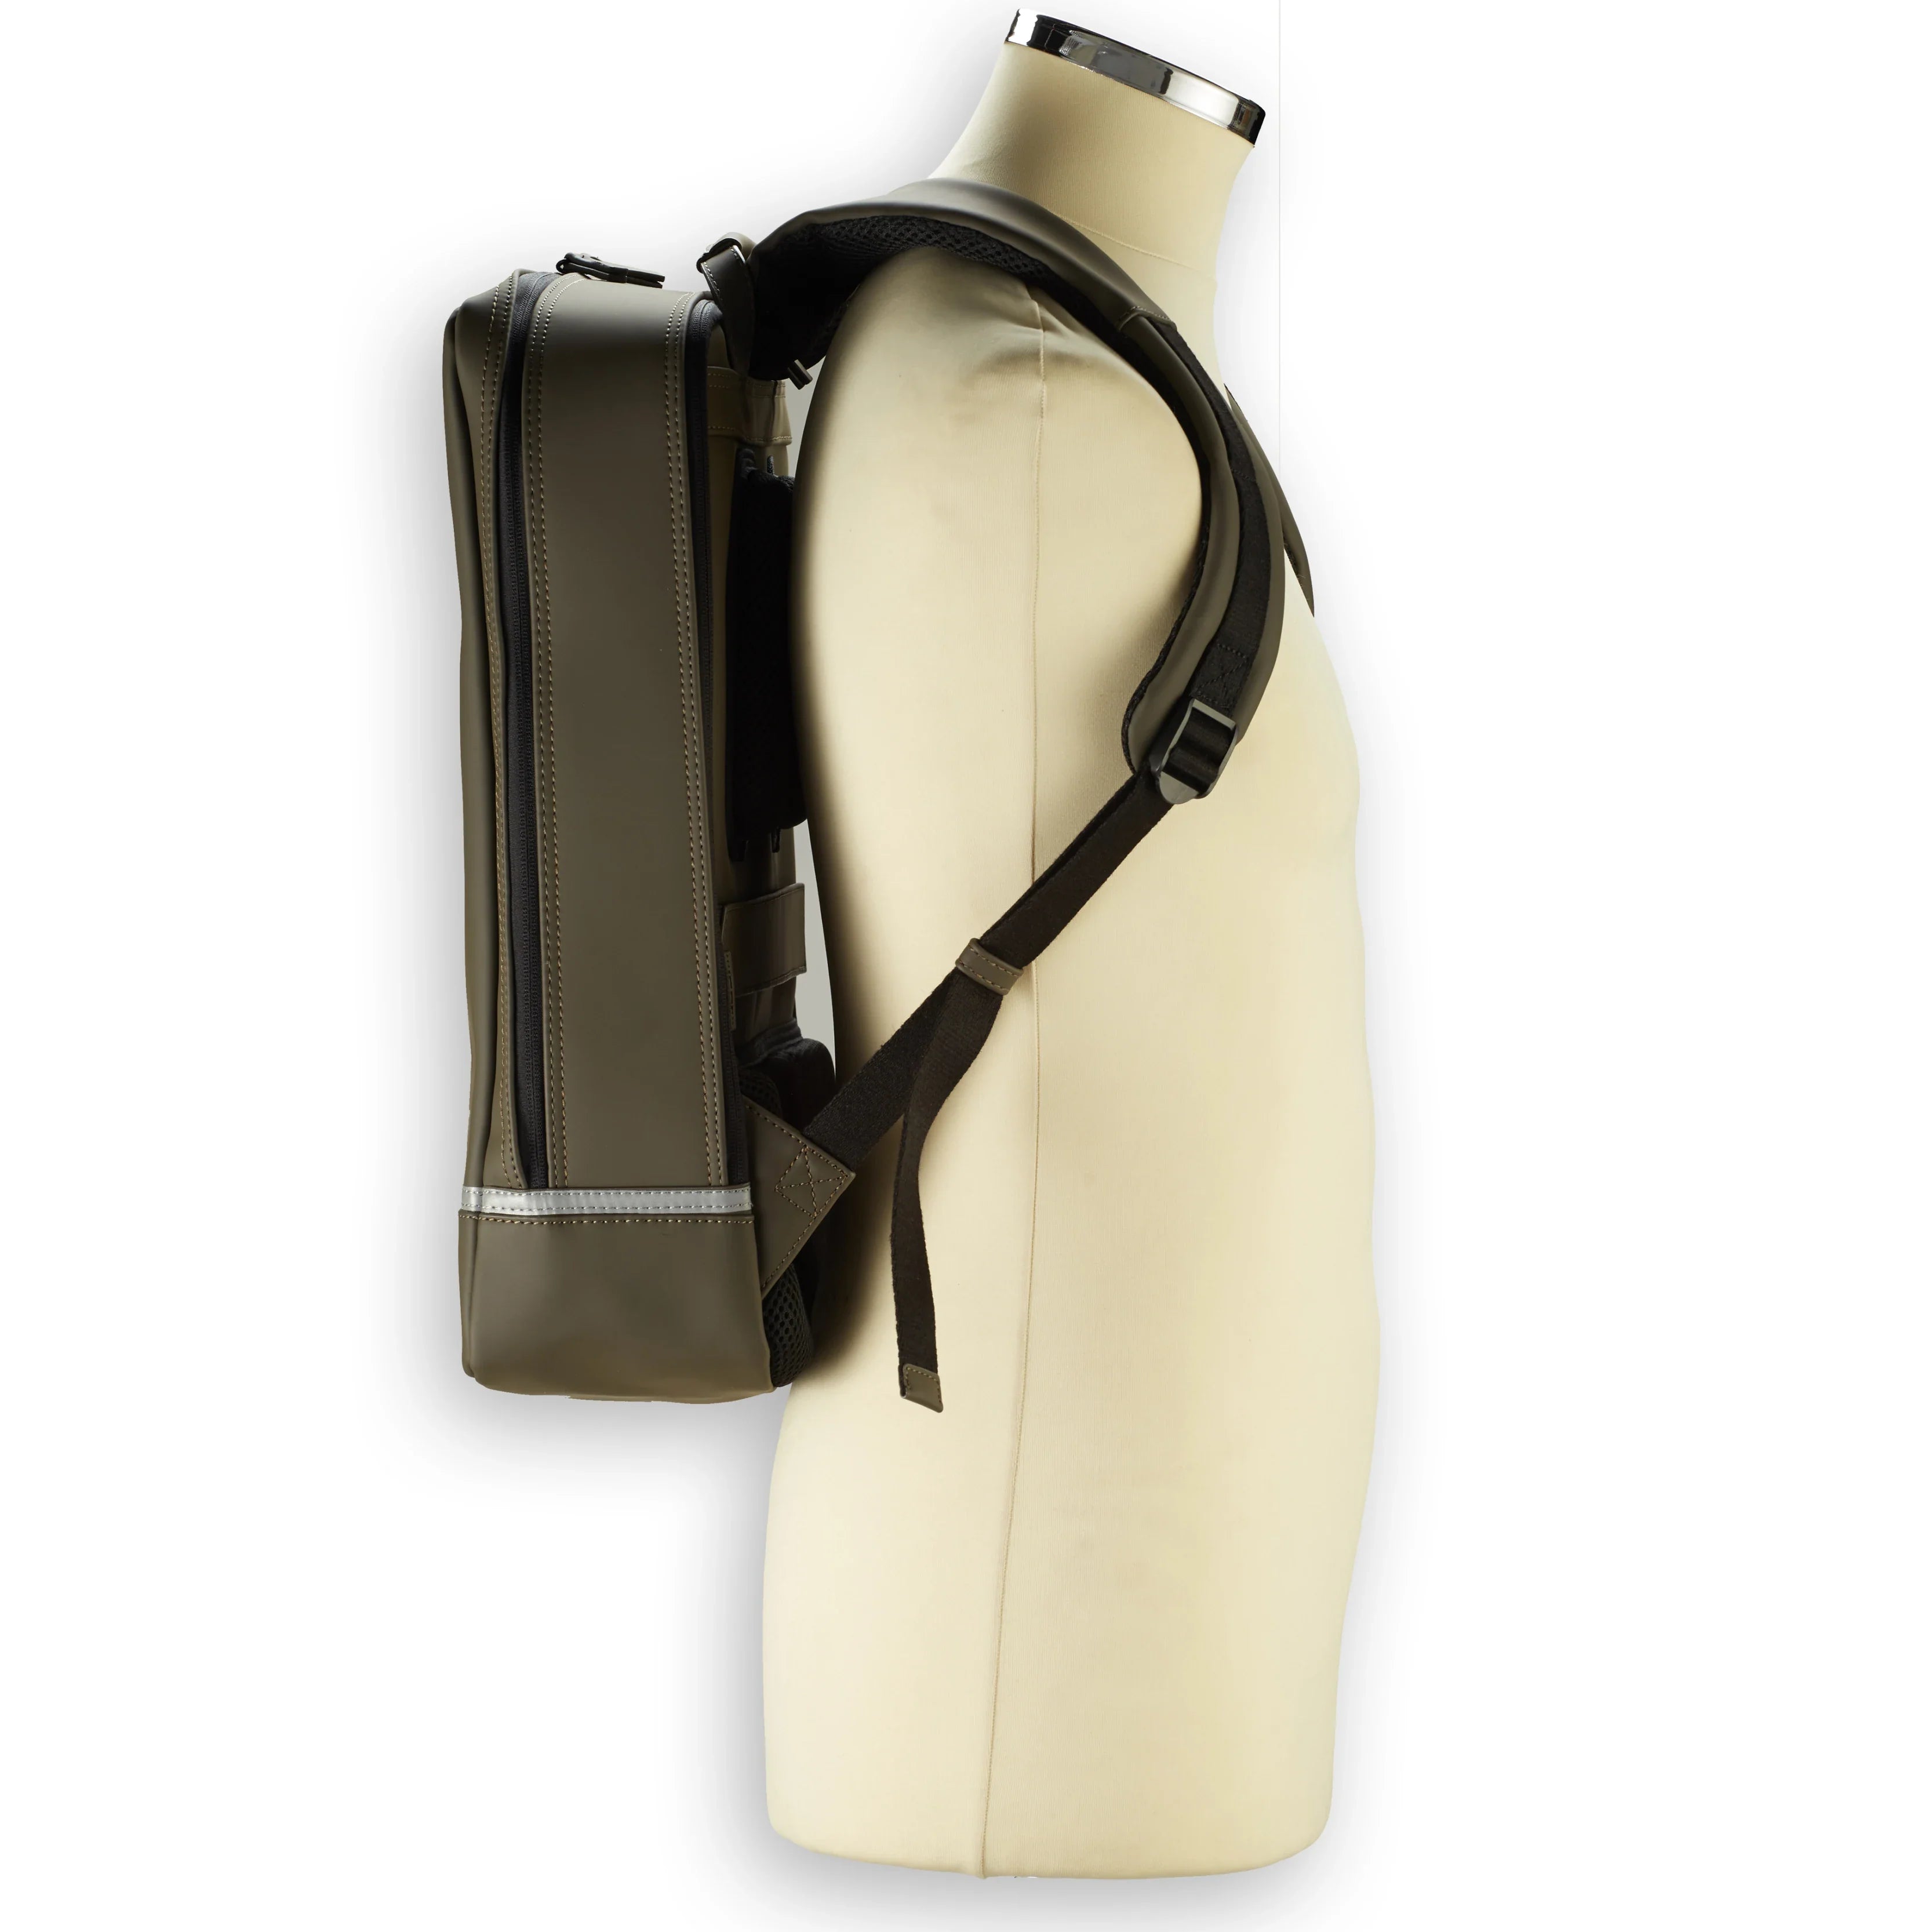 Jost Backpackspecial Daypack sac à dos de loisirs 44 cm - olive